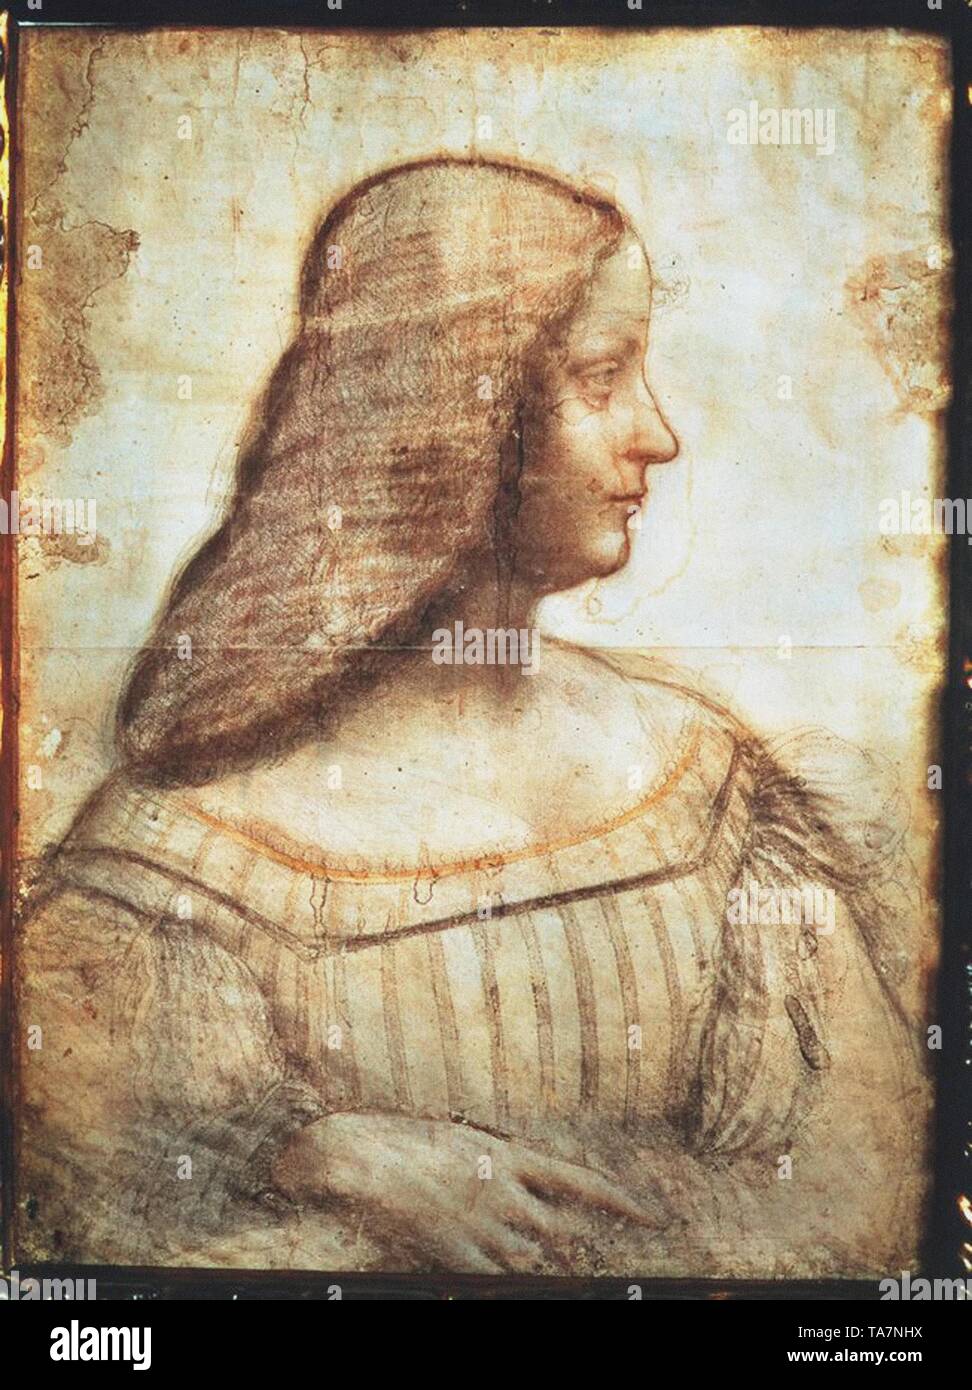 Leonardo Da Vinci vintage artwork Stock Photo